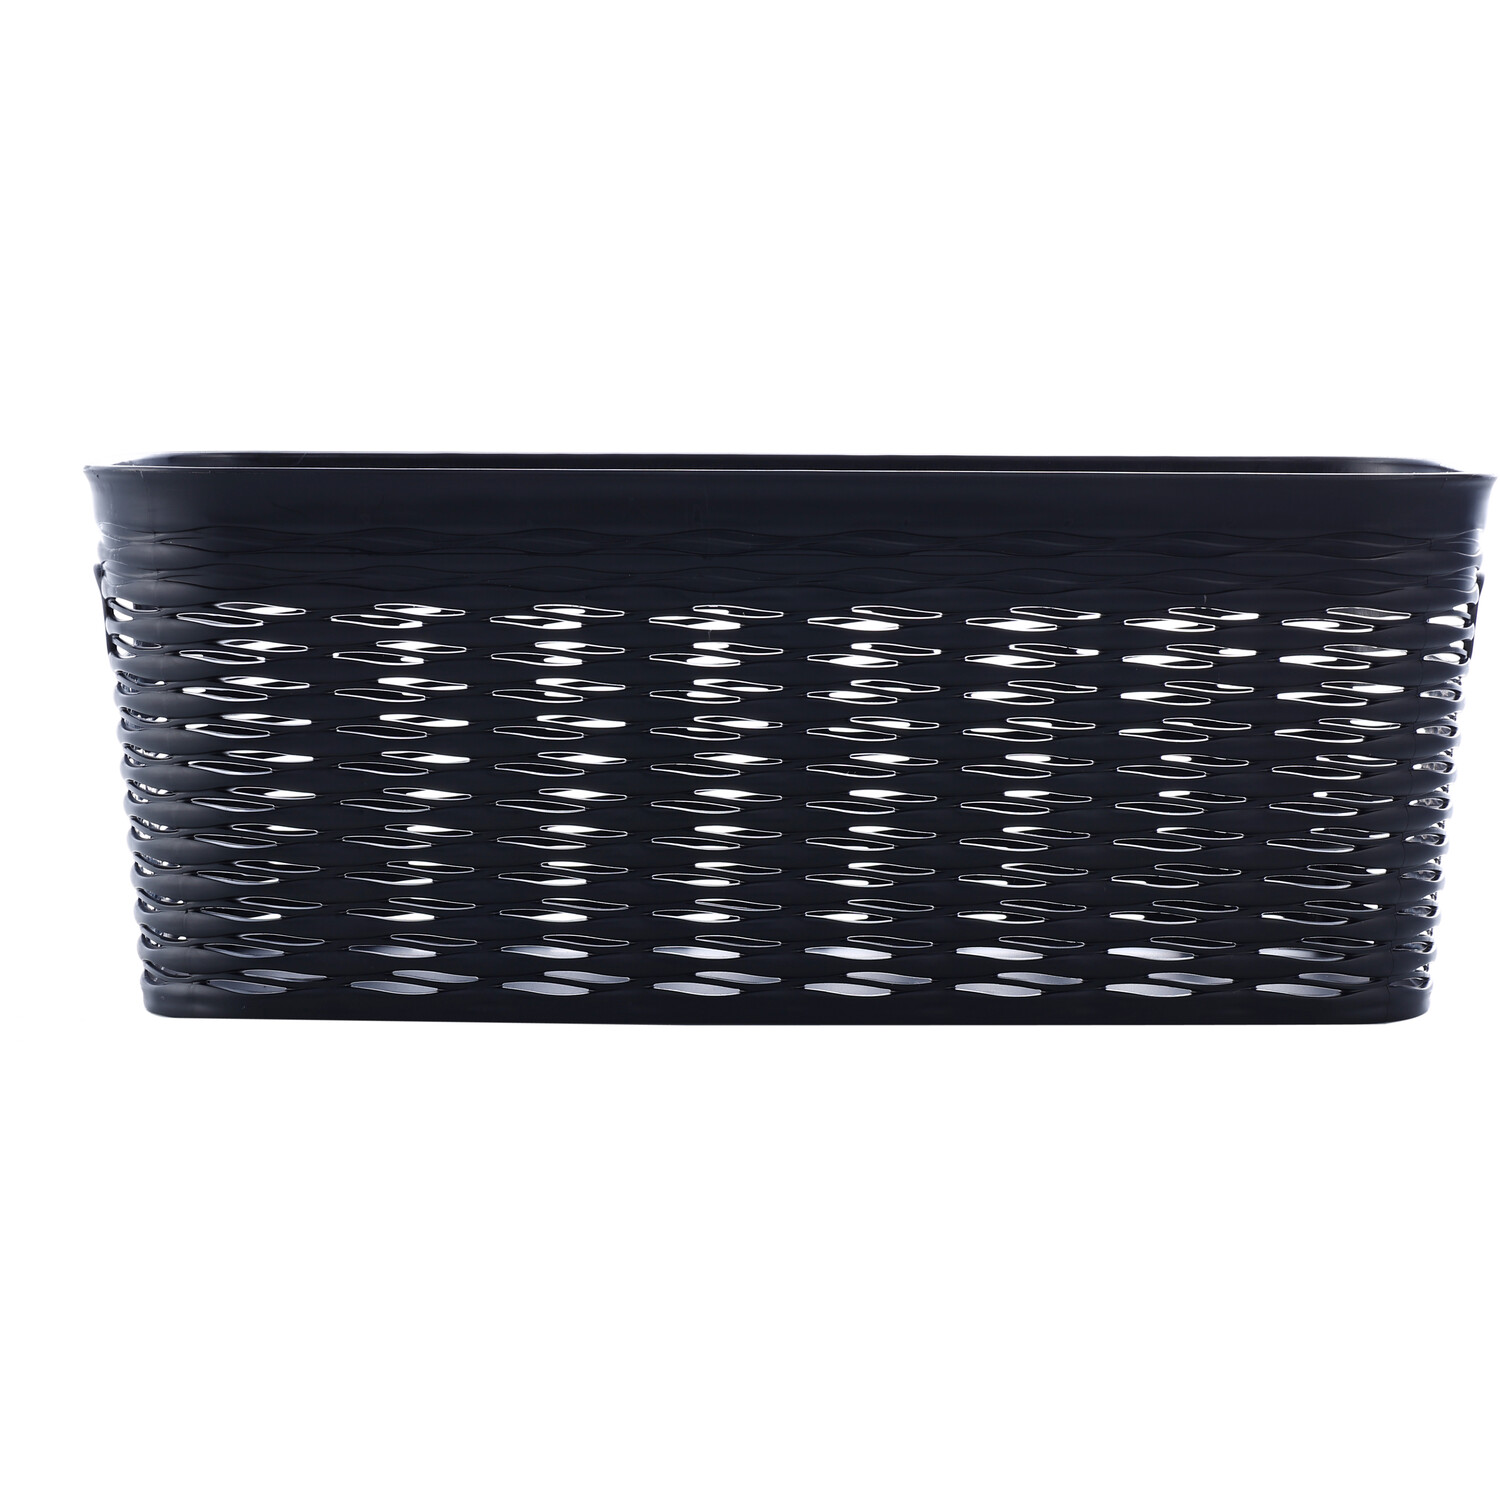 5L Black Wave Storage Basket Image 2